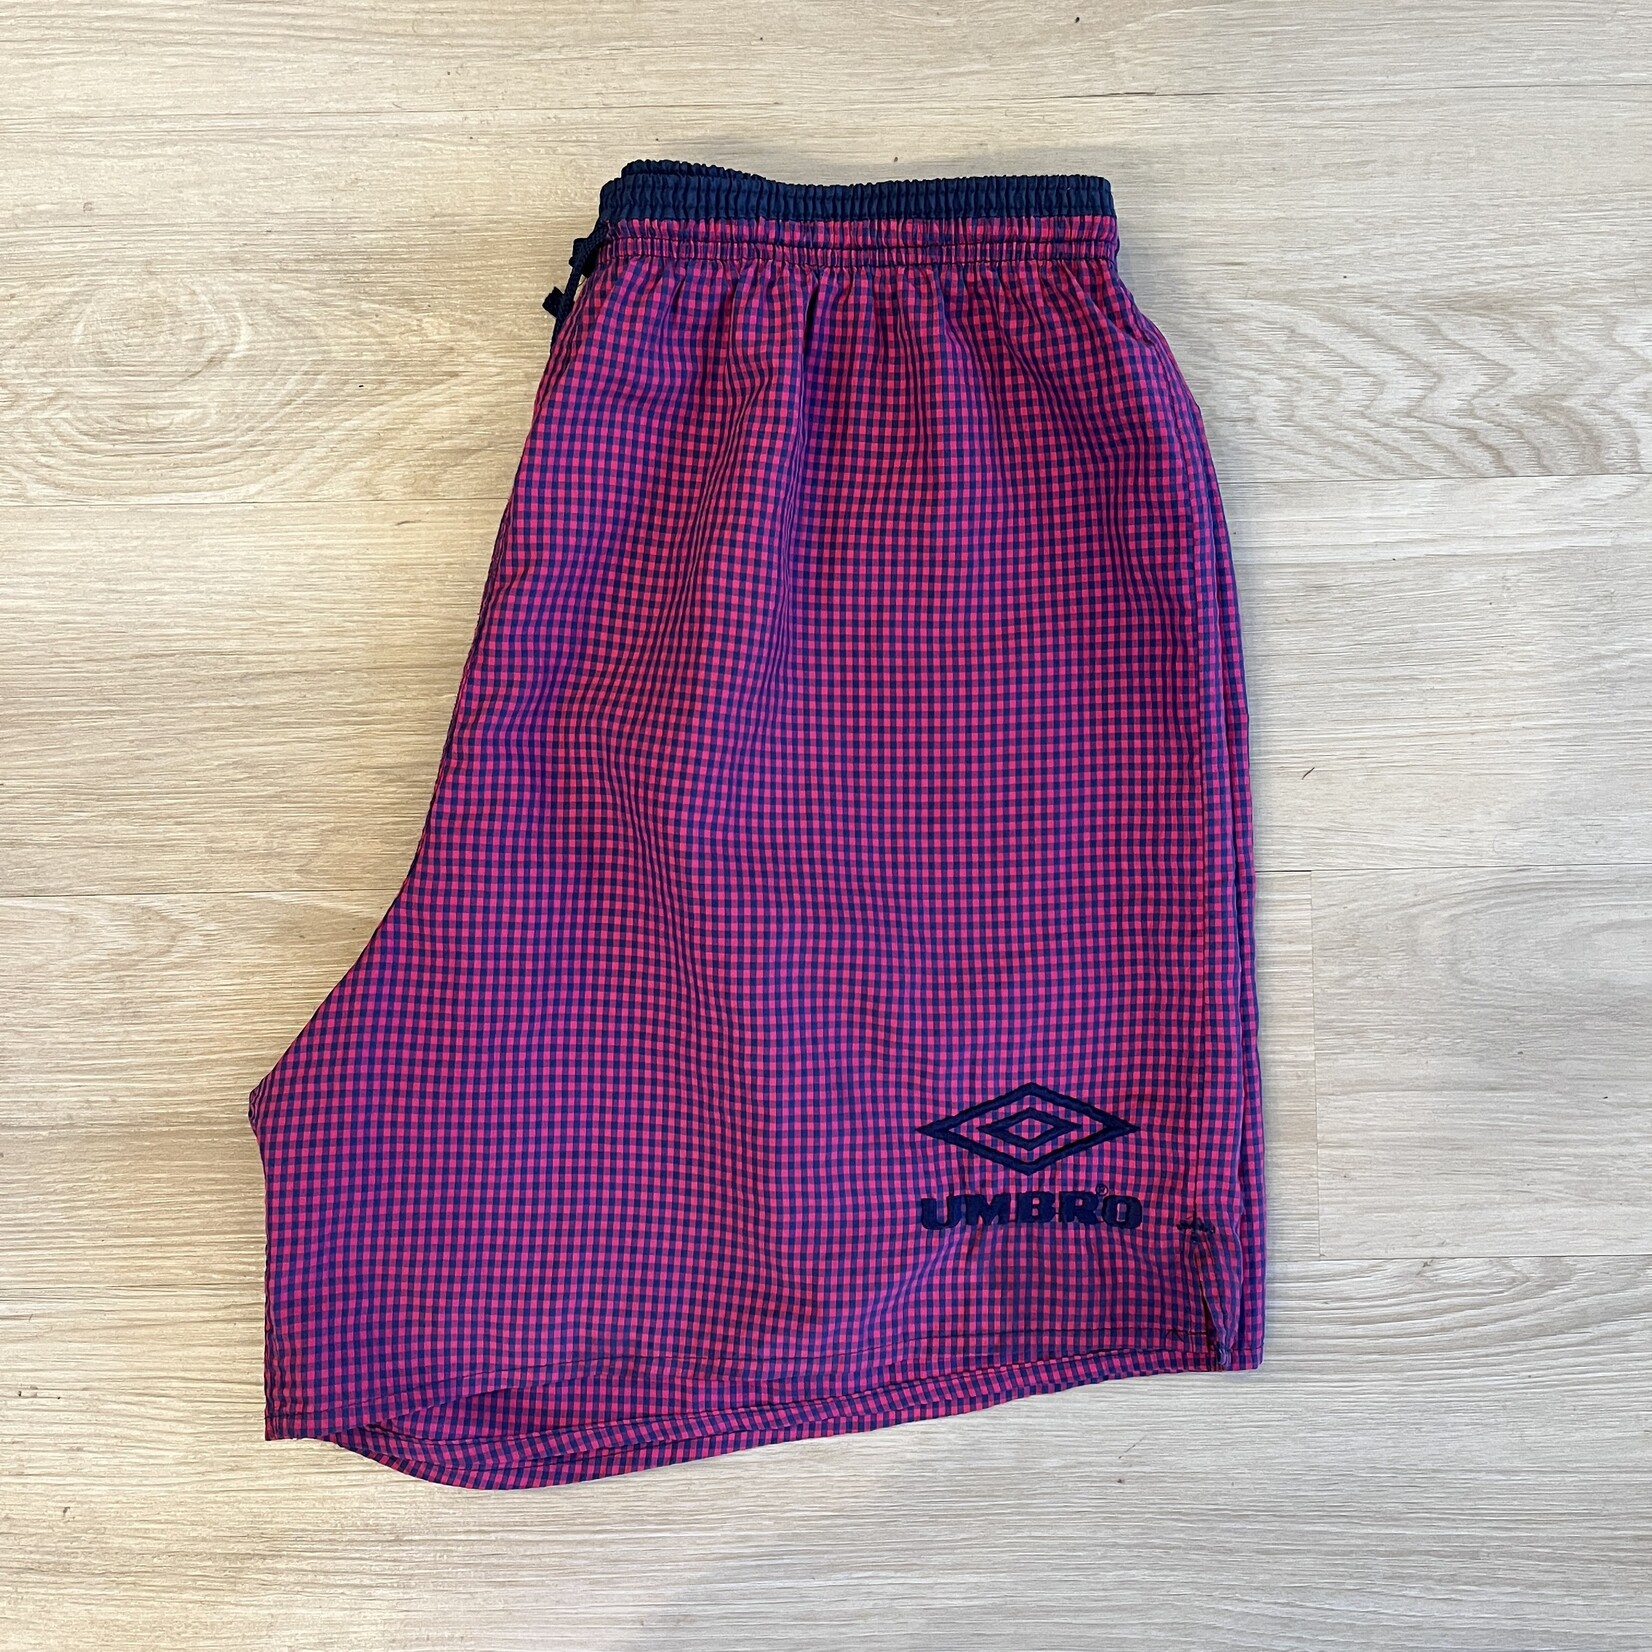 13959	umbro shorts purple/navy sz XL